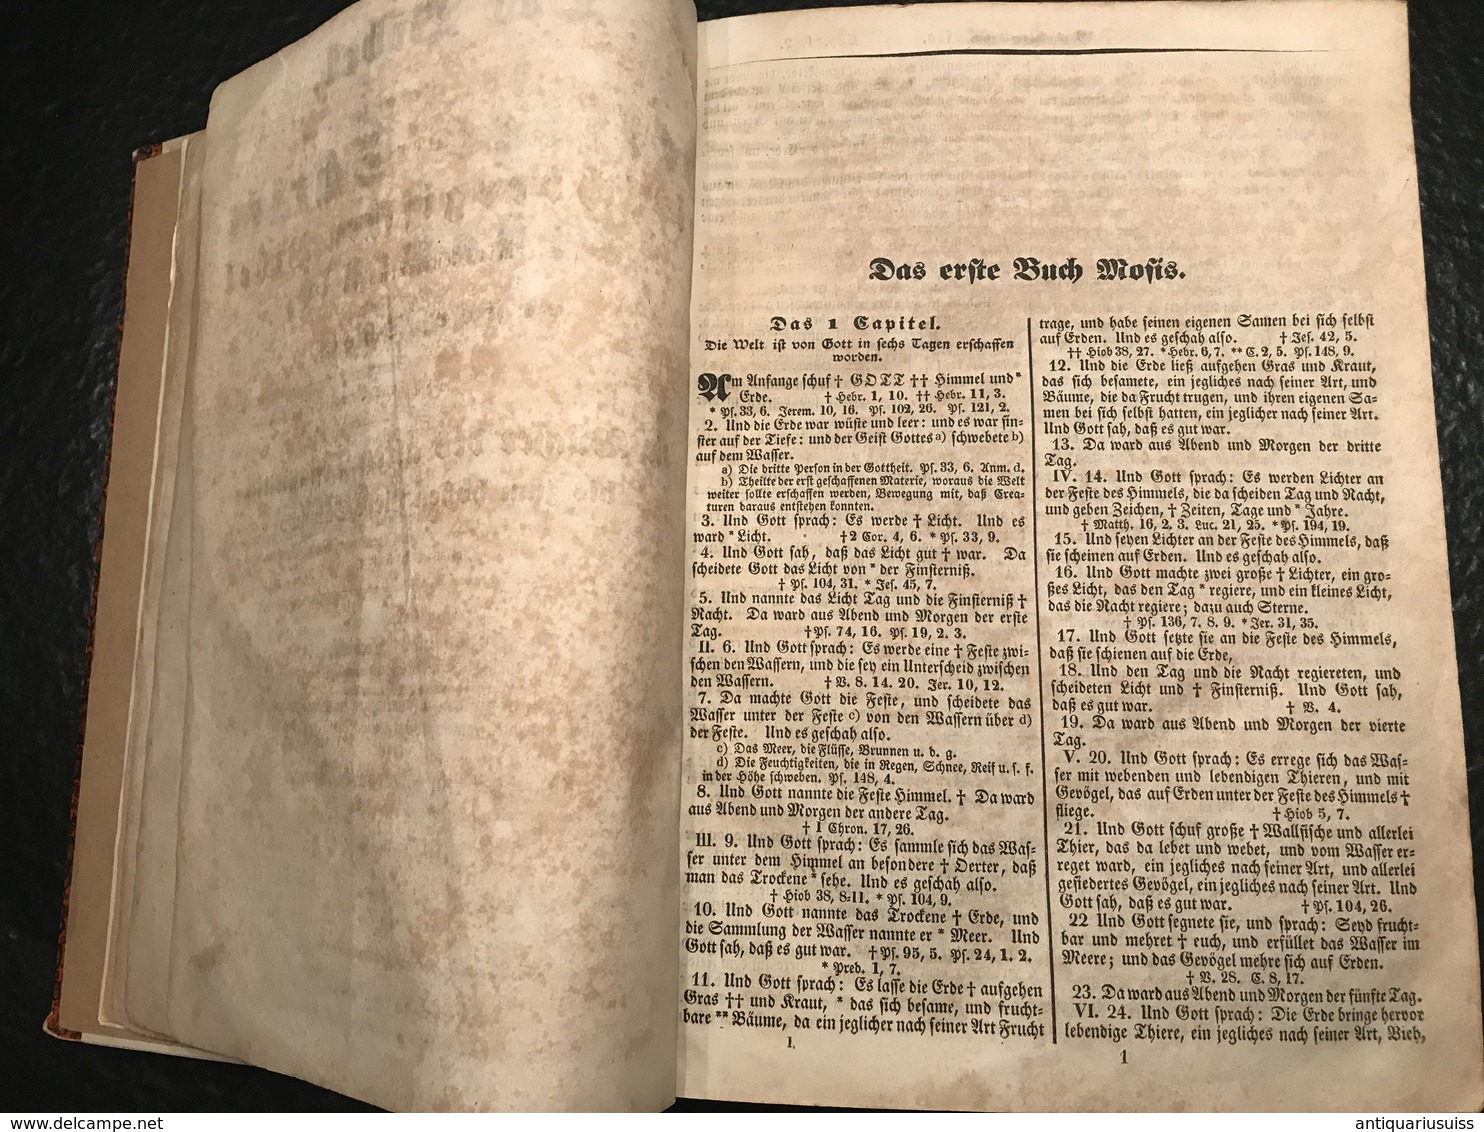 Die Bibel oder: Die ganze Heilige Schrift Alten und Neuen Testaments, nach der deutschen Übersetzung D. Martin Luthers